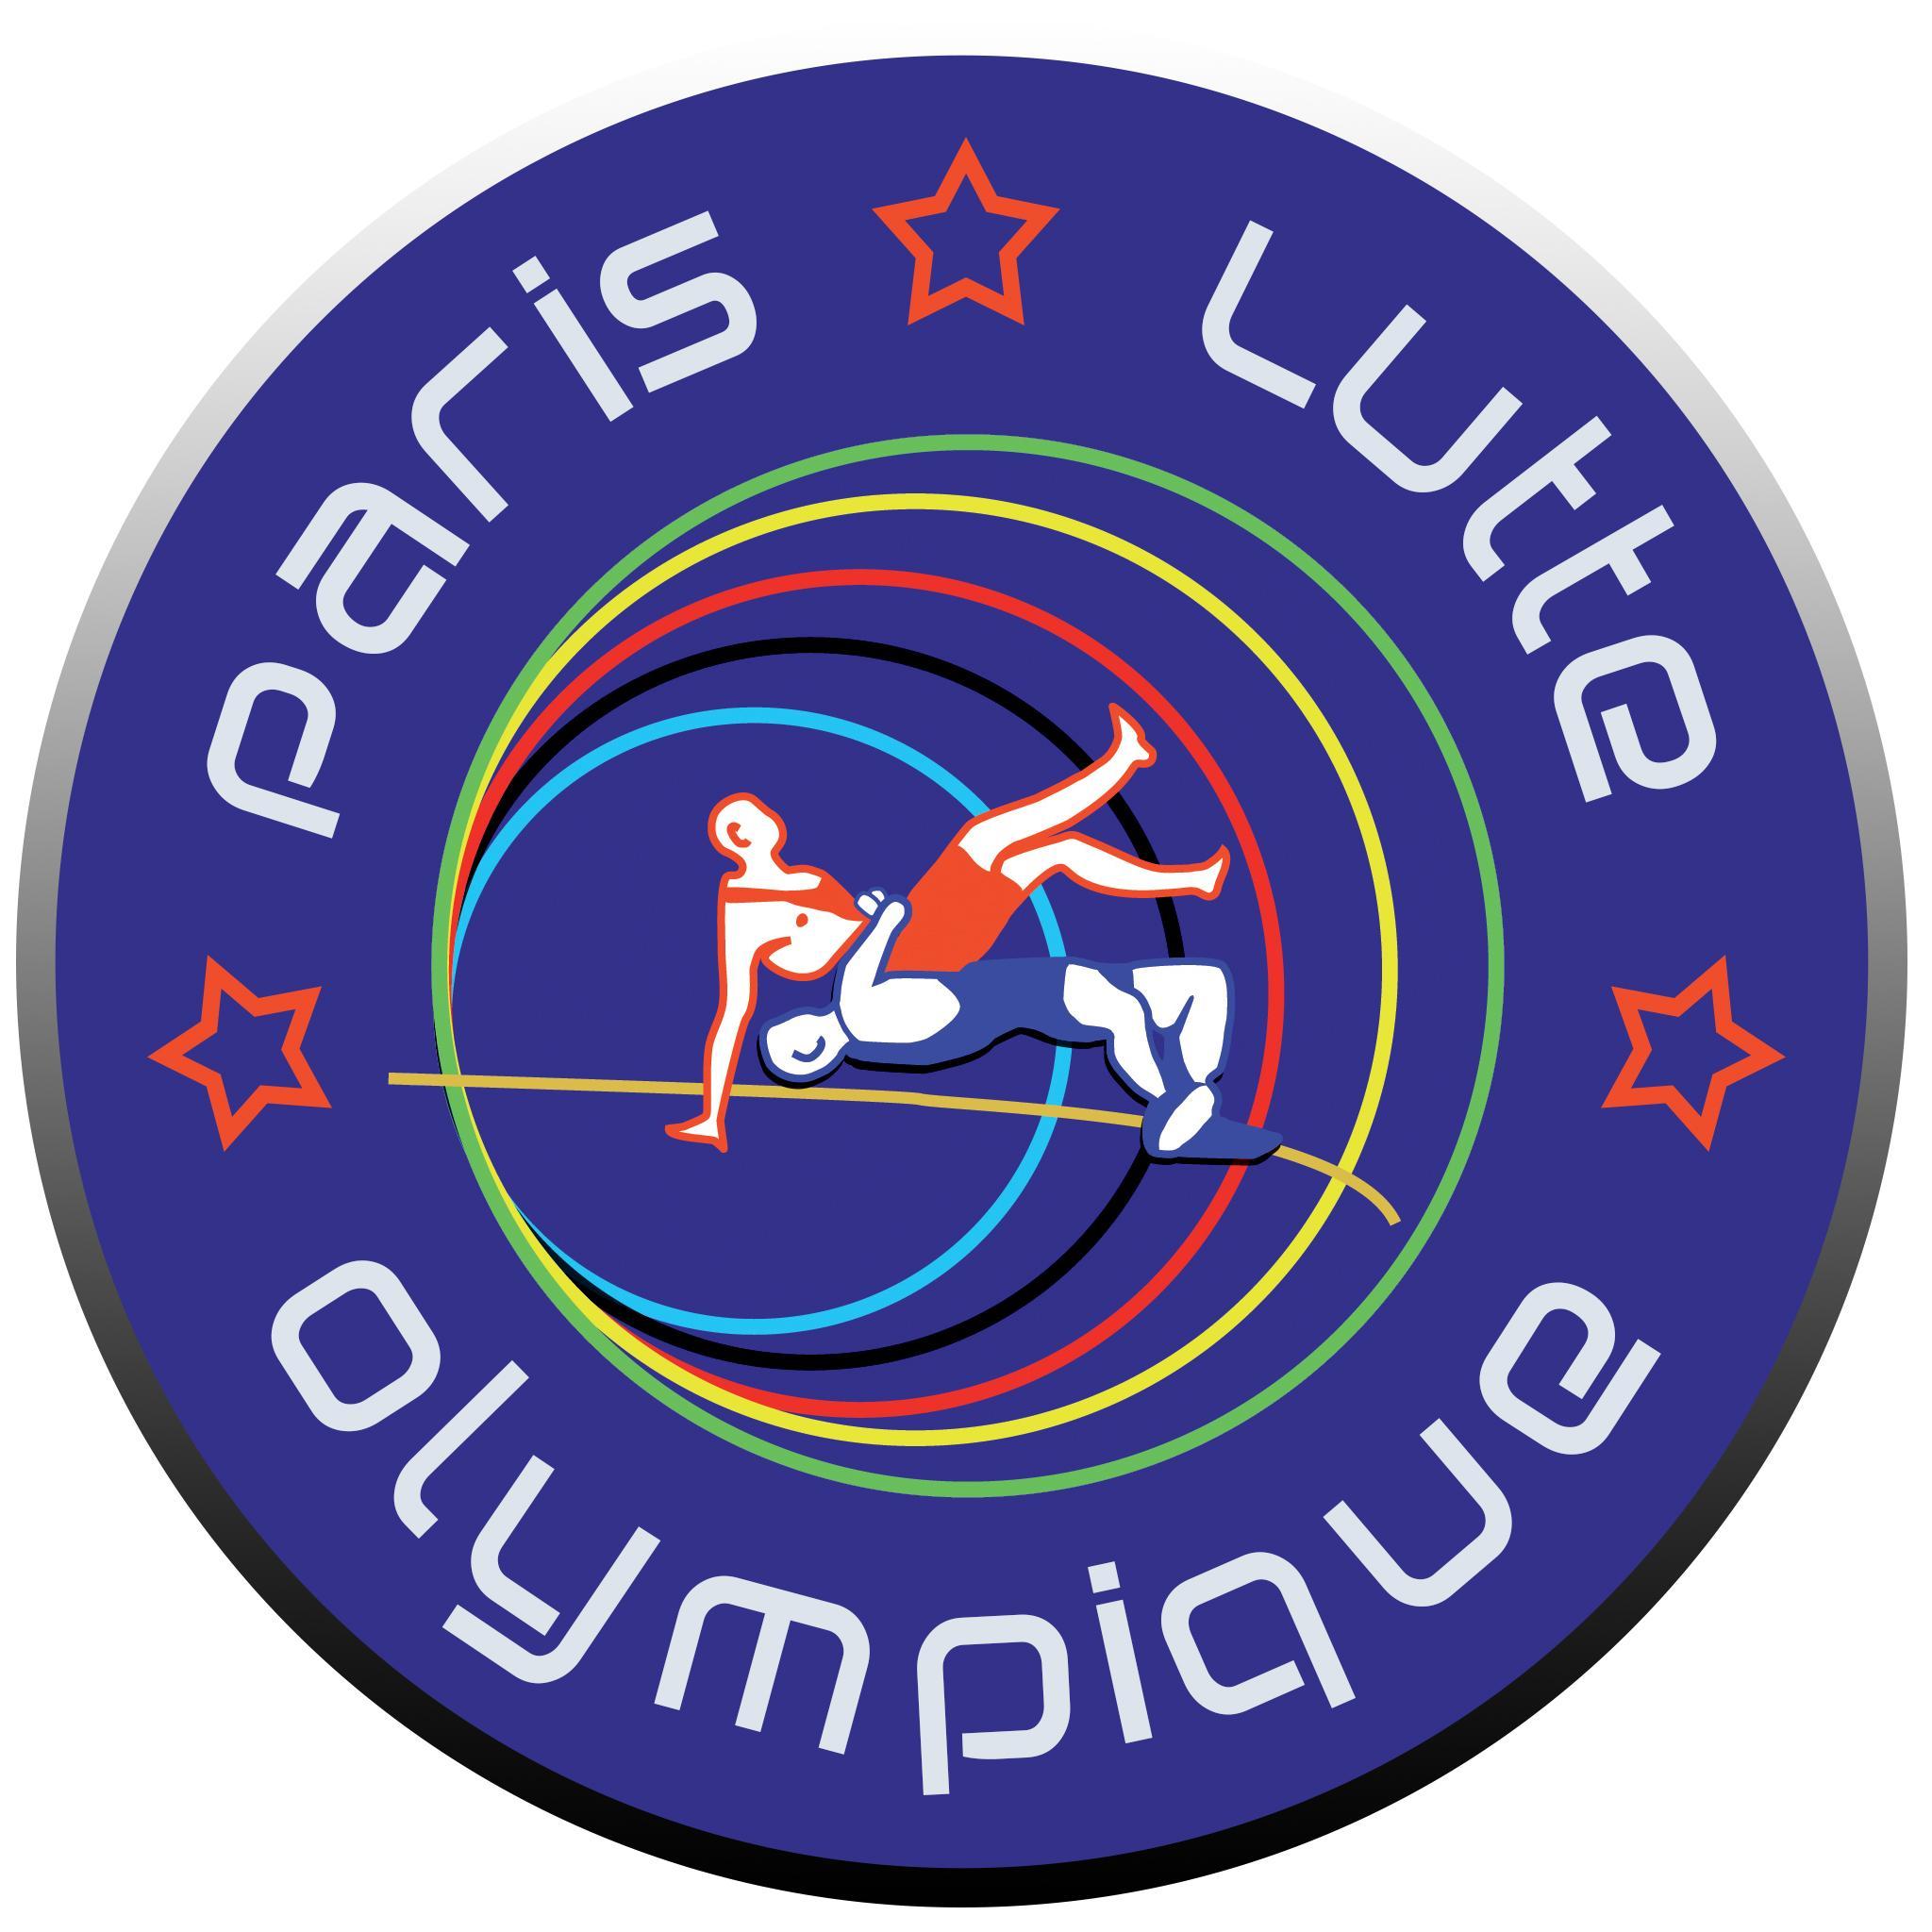 Club de lutte Paris | Paris wrestling Club
ℹ️ (+33)632466734 | https://t.co/iR1DKly3RF…